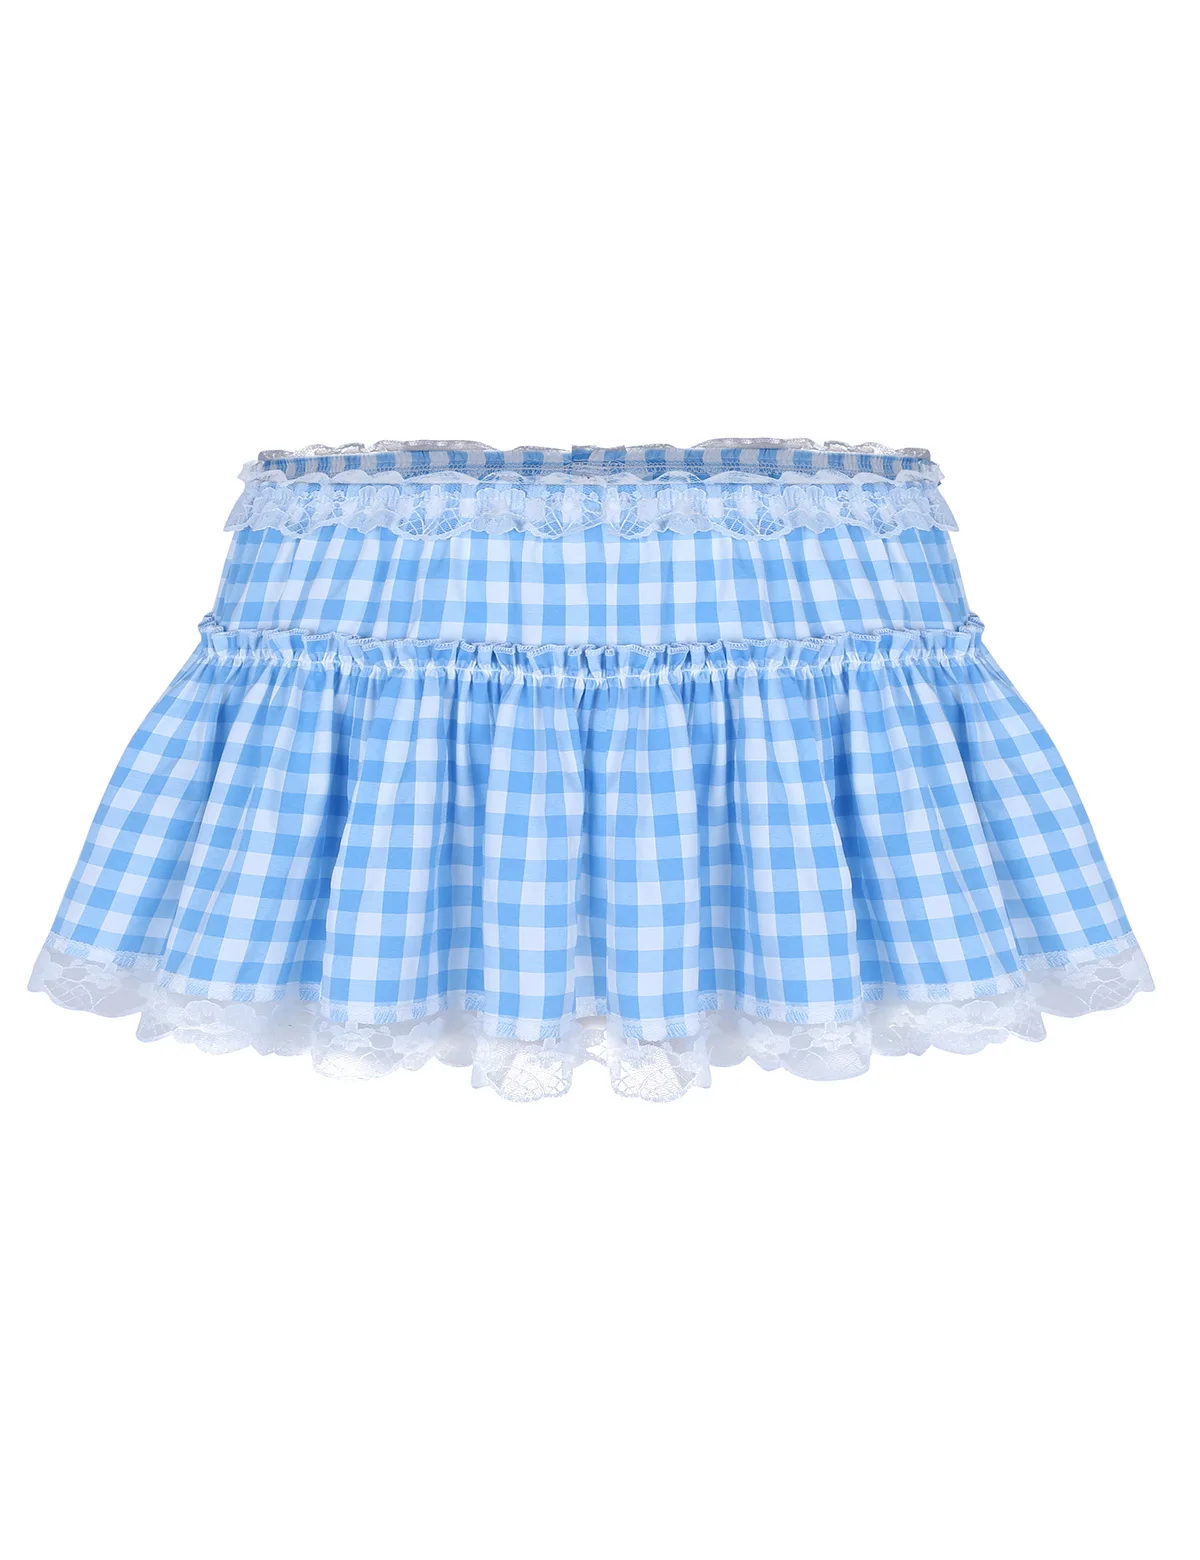 Мини-юбка унисекс для мужчин и женщин, сексуальная короткая юбка с эластичным поясом, плиссированная клетчатая юбка с кружевным подолом